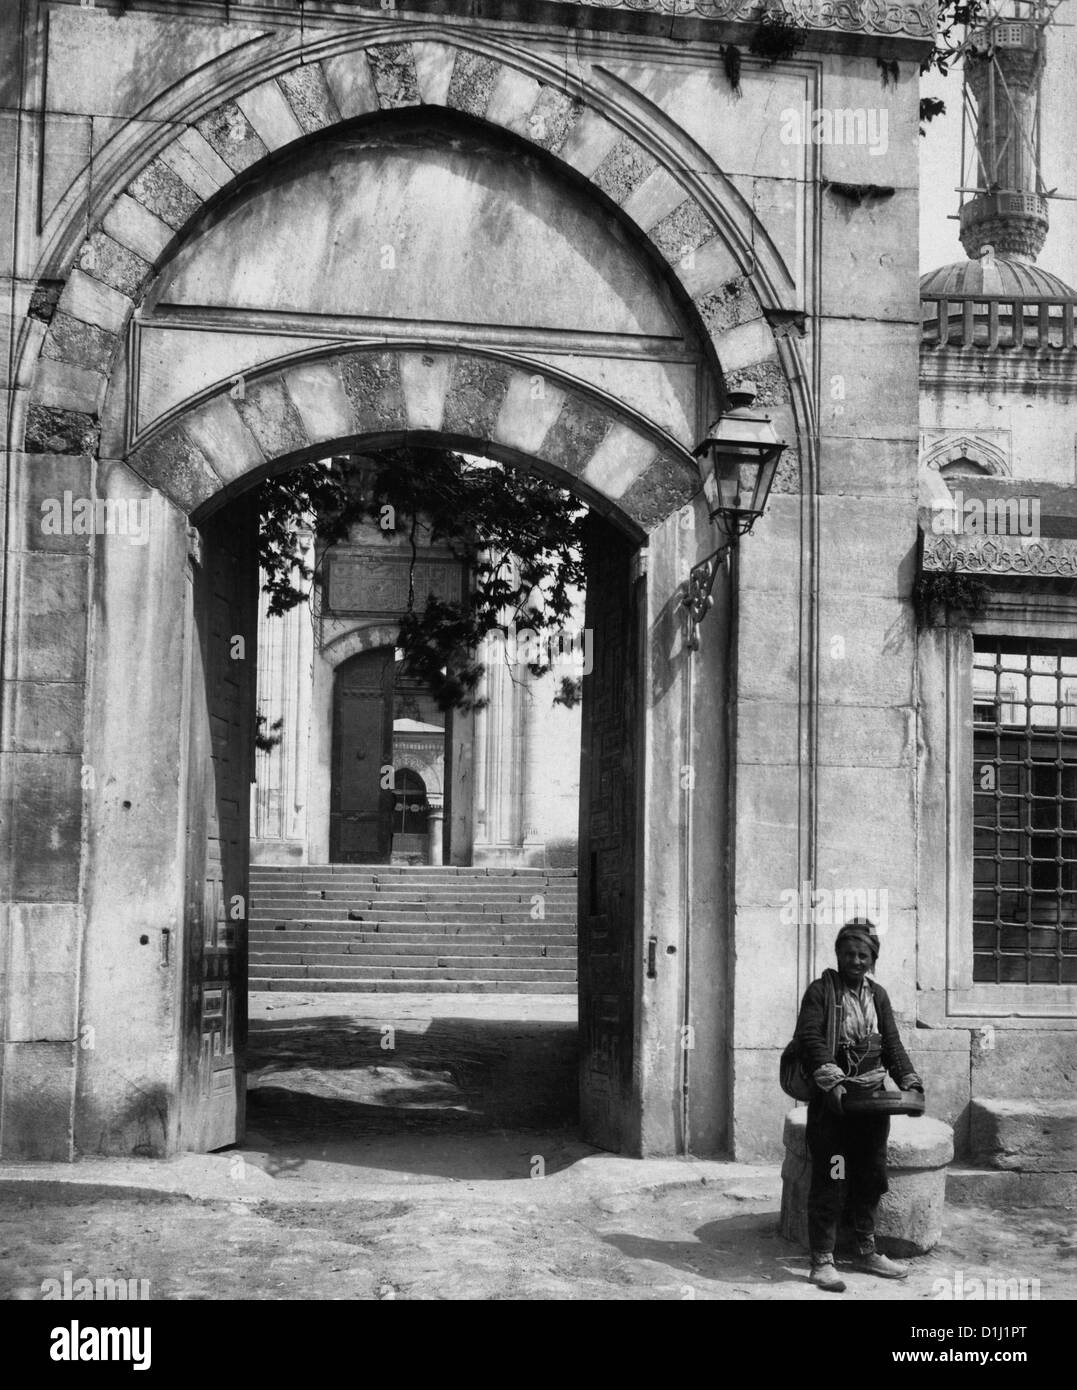 Entrée de la Mosquée Ahmed - homme debout à l'extérieur entrée de Sultanahmet Camii - Istanbul, Turquie, circa 1900 Banque D'Images